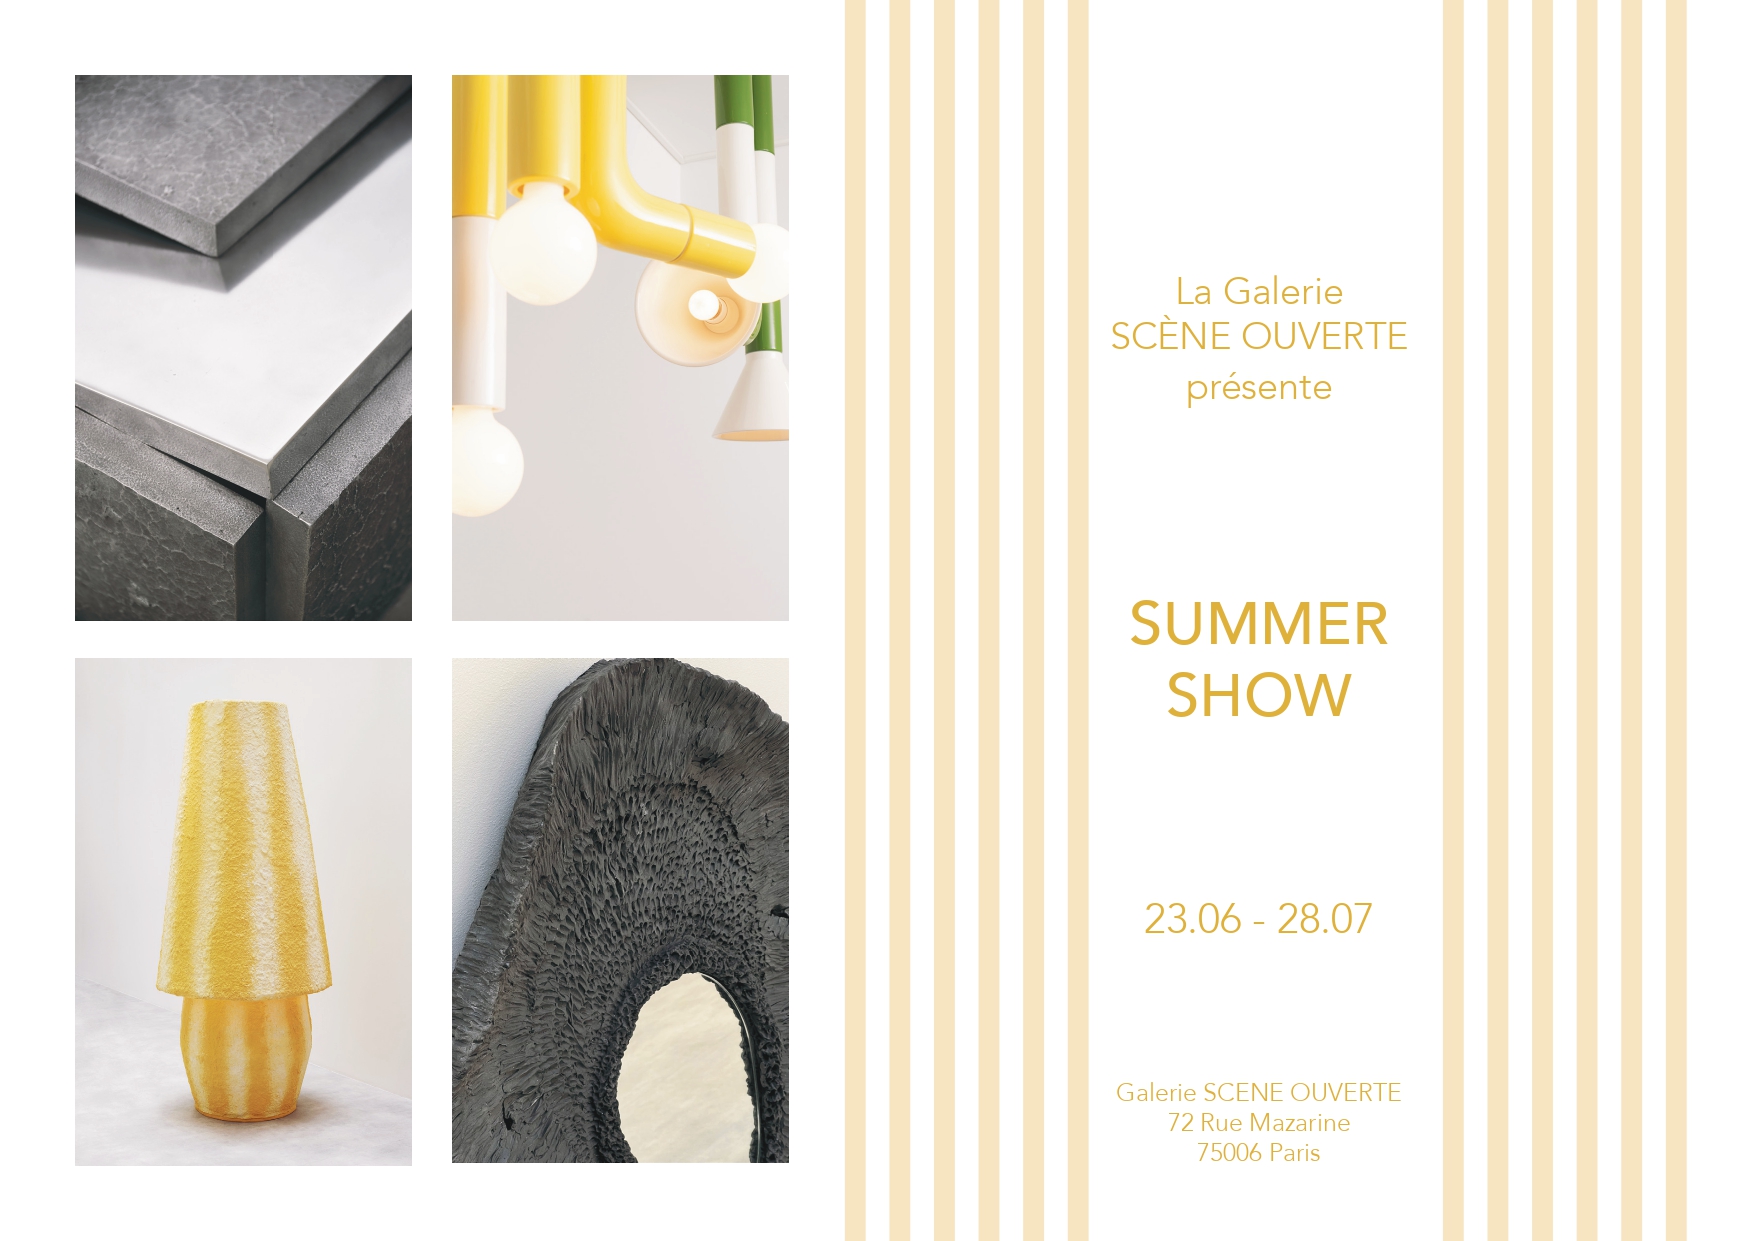 galerie-scene-ouverte-paris-summer-show-exposition-exhibition